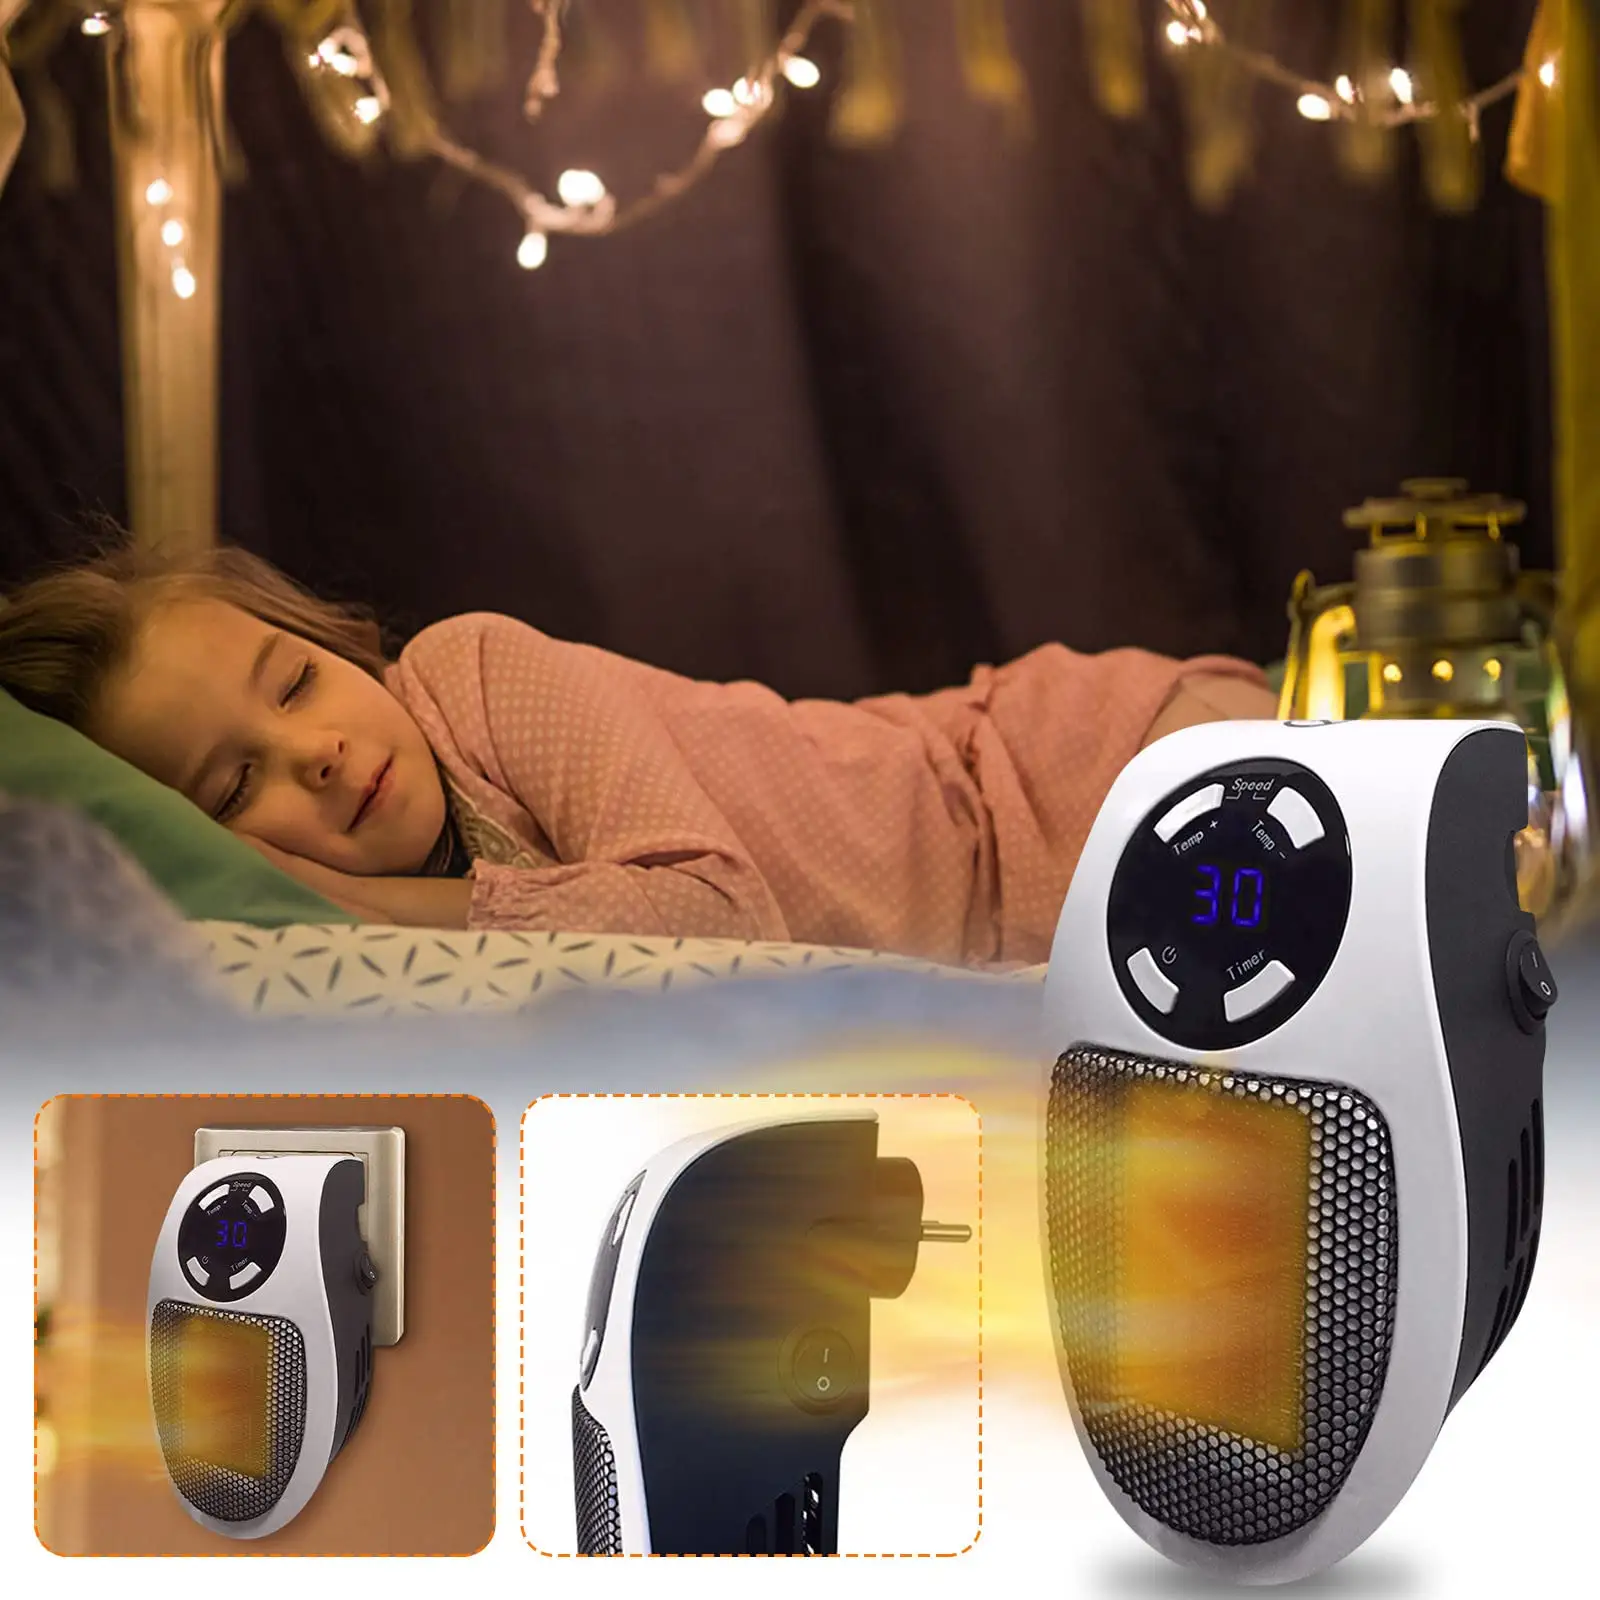 HelloWorld Ventilador Calefactor tak Mini şarjlı elektrikli seramik Handi ısıtıcı fanı taşınabilir gaz kullanışlı mobil kişisel isıtıcı